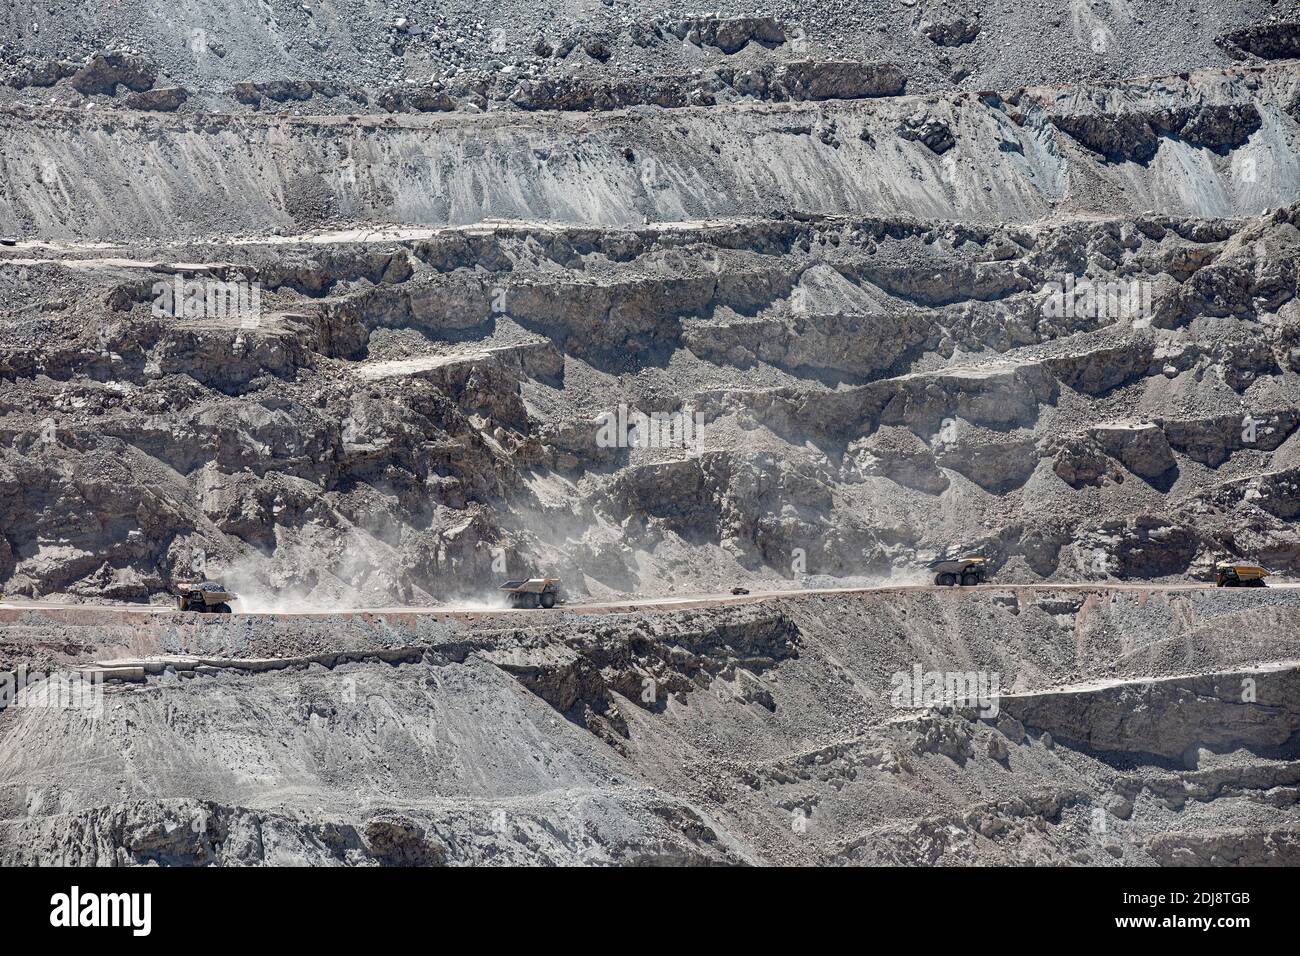 Maquinaria enorme que trabaja en la mina de cobre a cielo abierto Chuquicamata, la mayor por volumen del mundo, Chile. Foto de stock